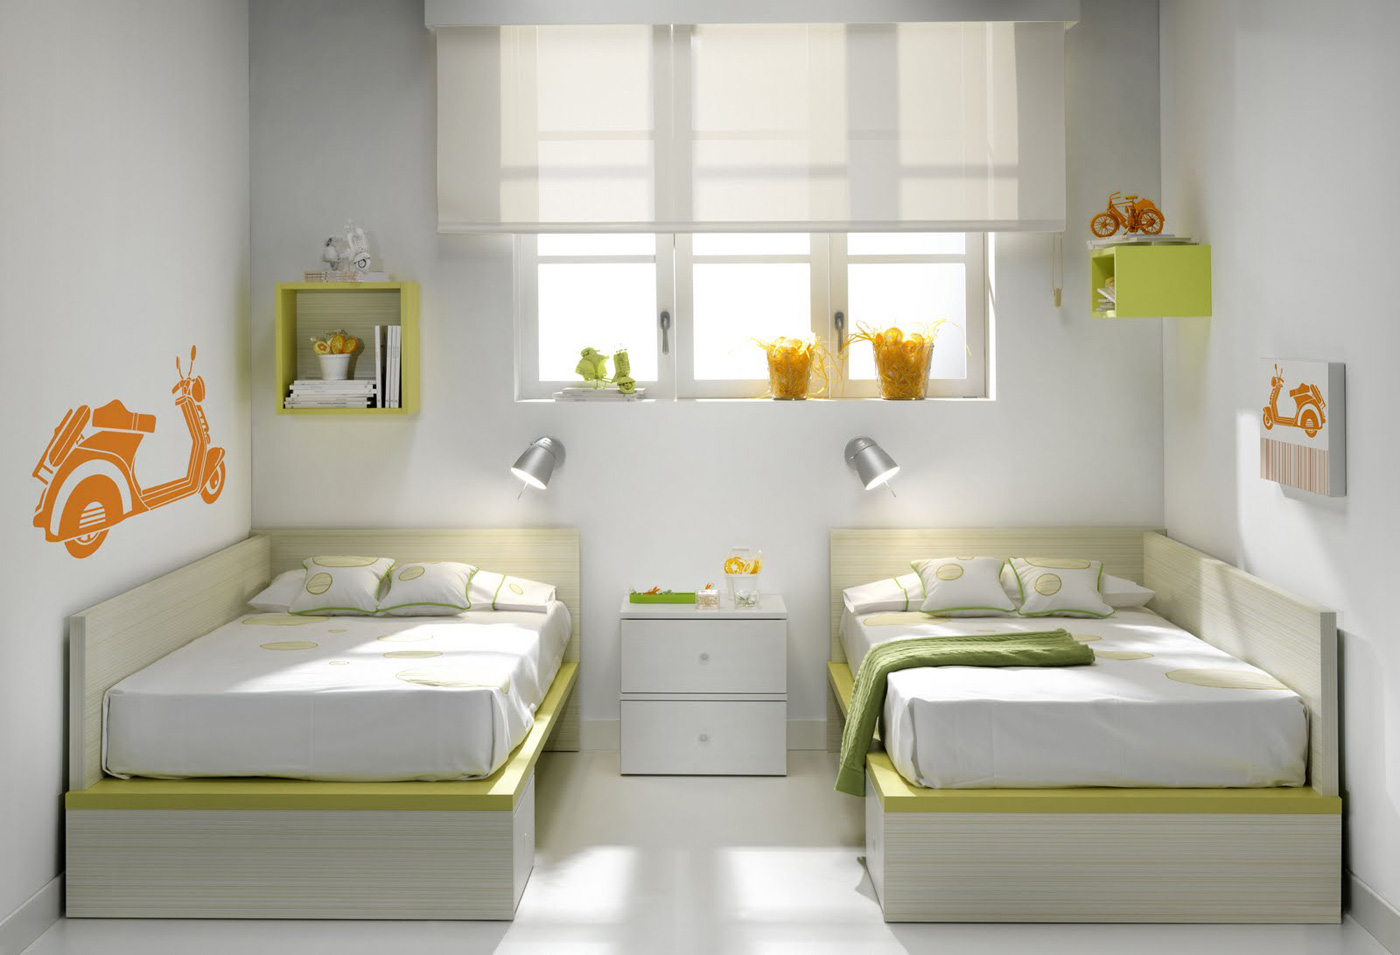 Outlet de dormitorios juveniles y habitaciones infantiles